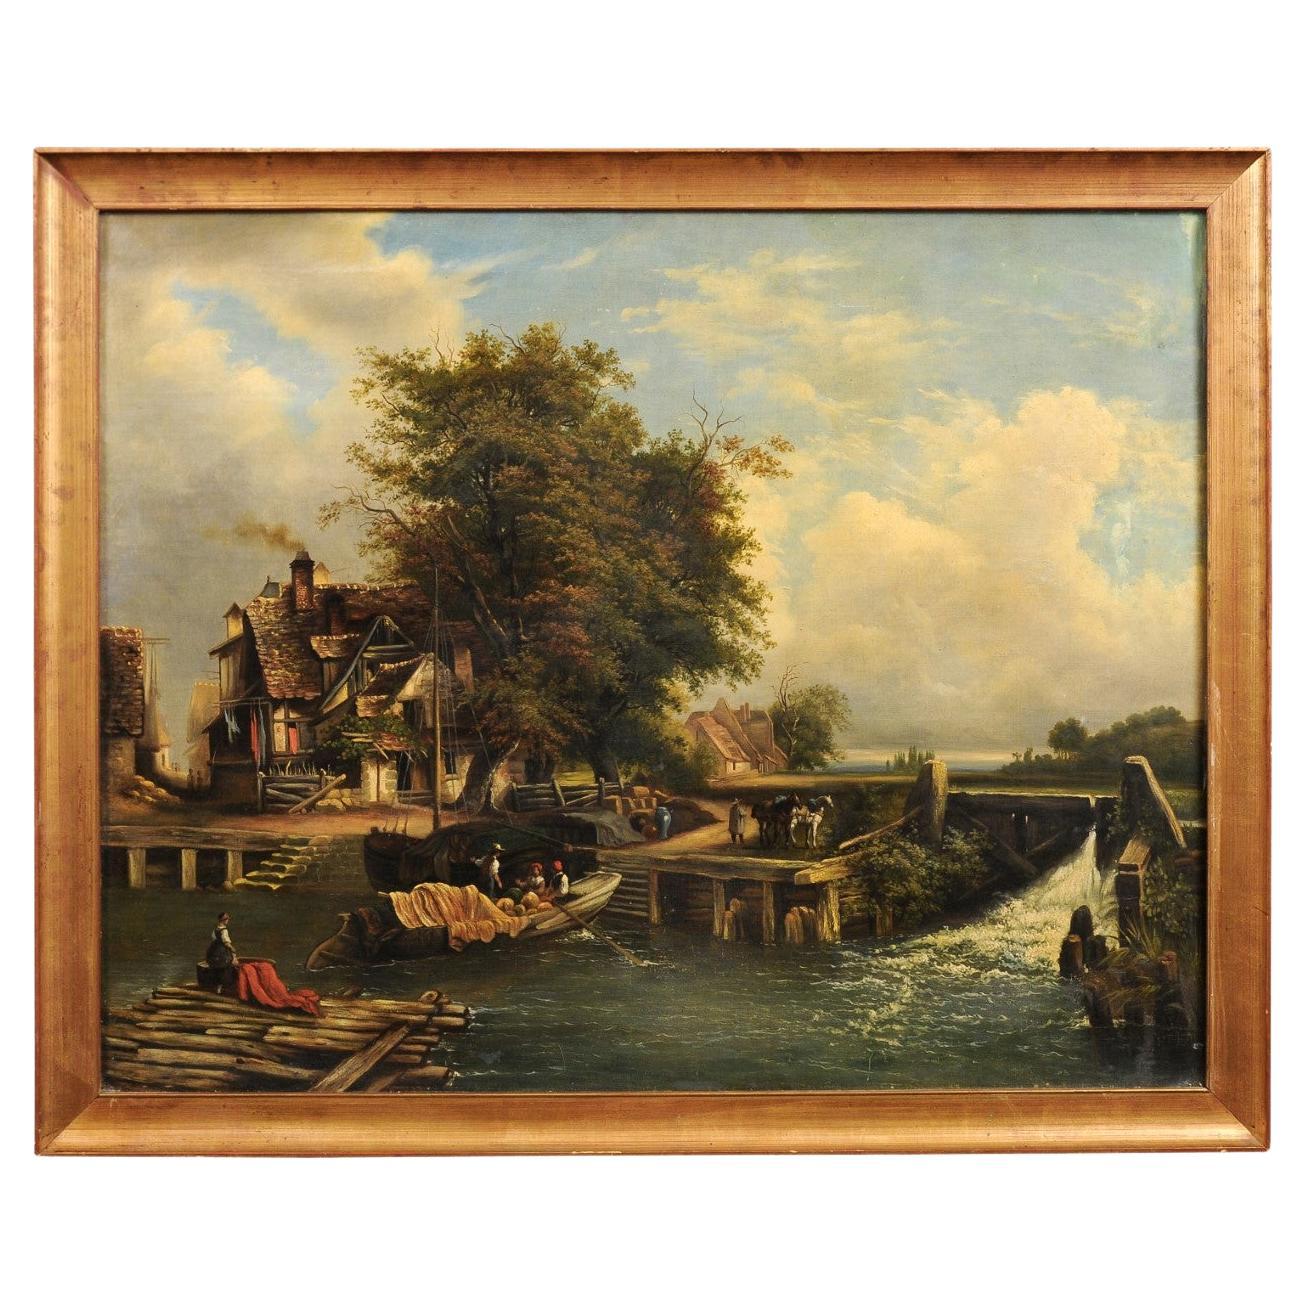 Peinture à l'huile française du 19ème siècle représentant une scène de vie rurale